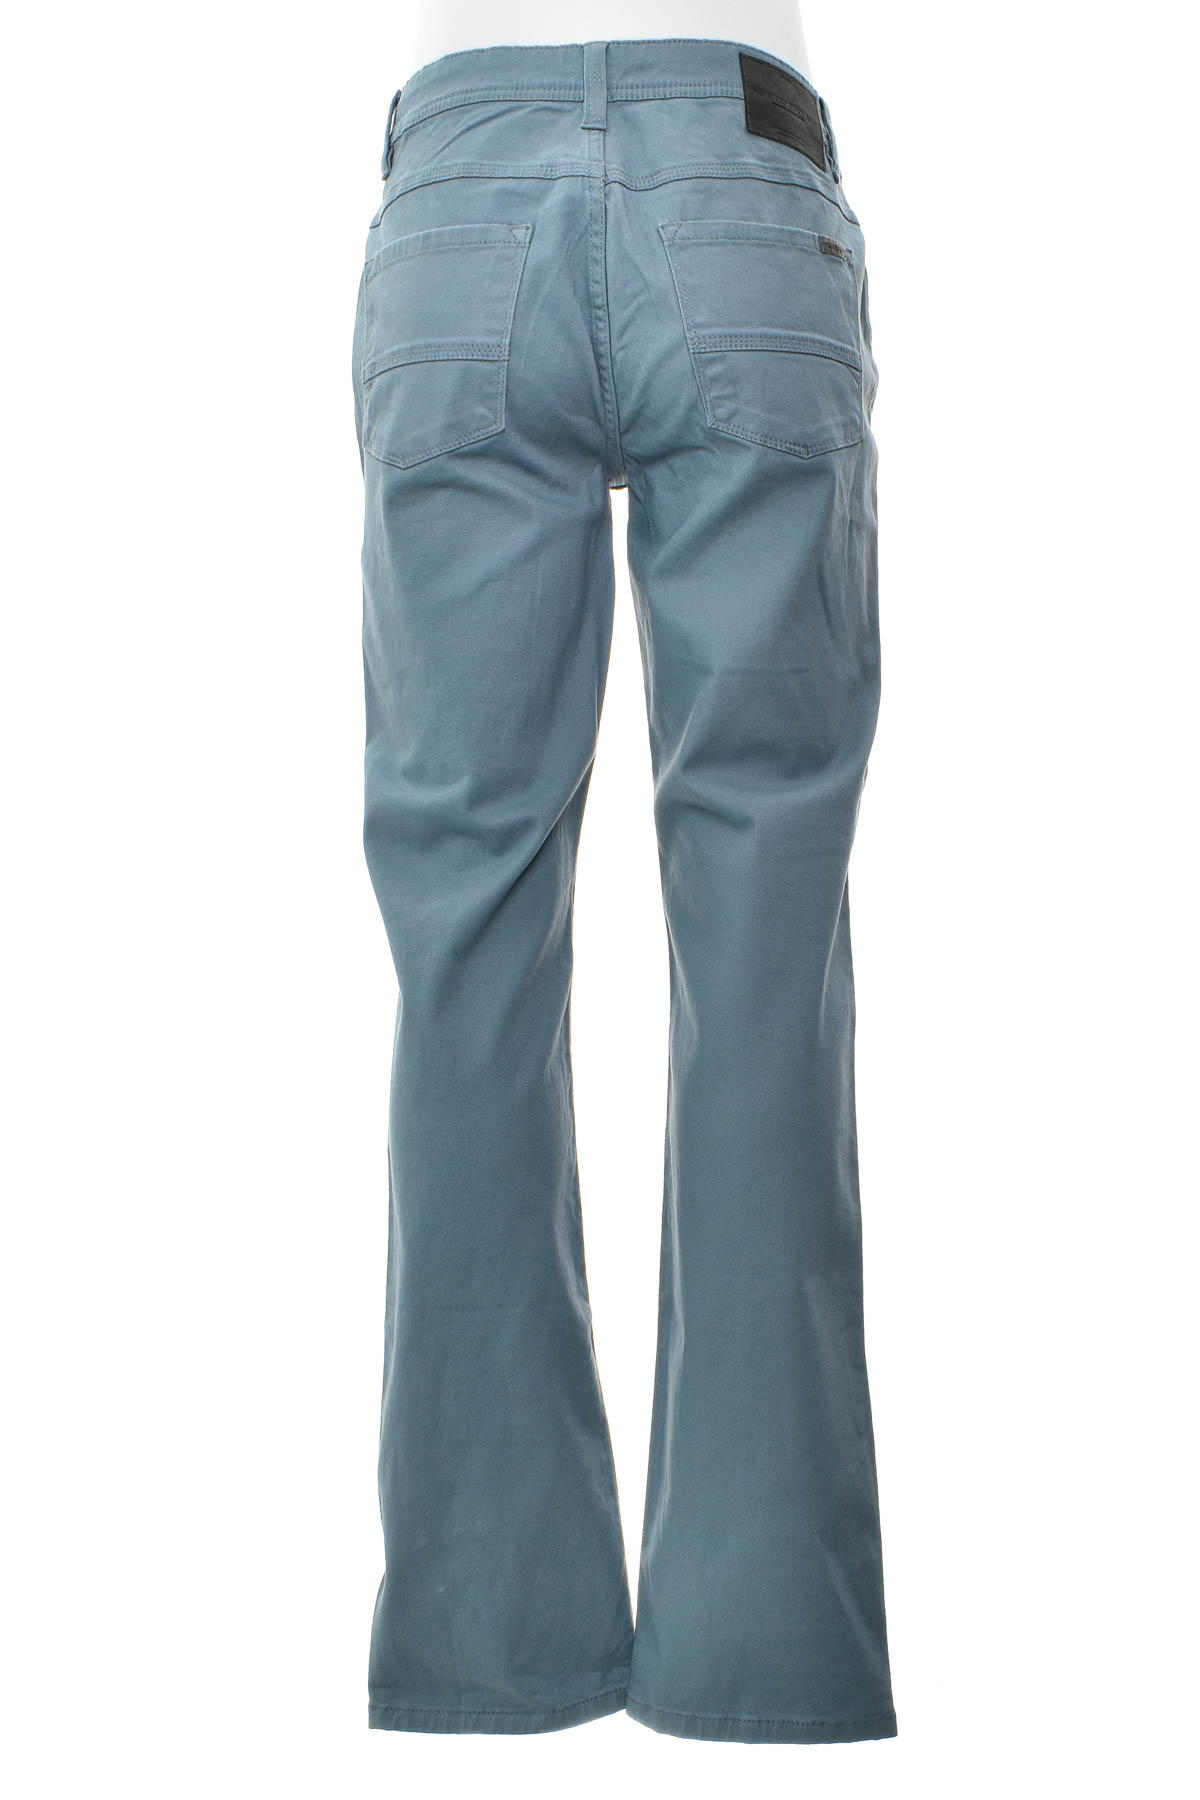 Men's trousers - MILLER&MONROE - 1